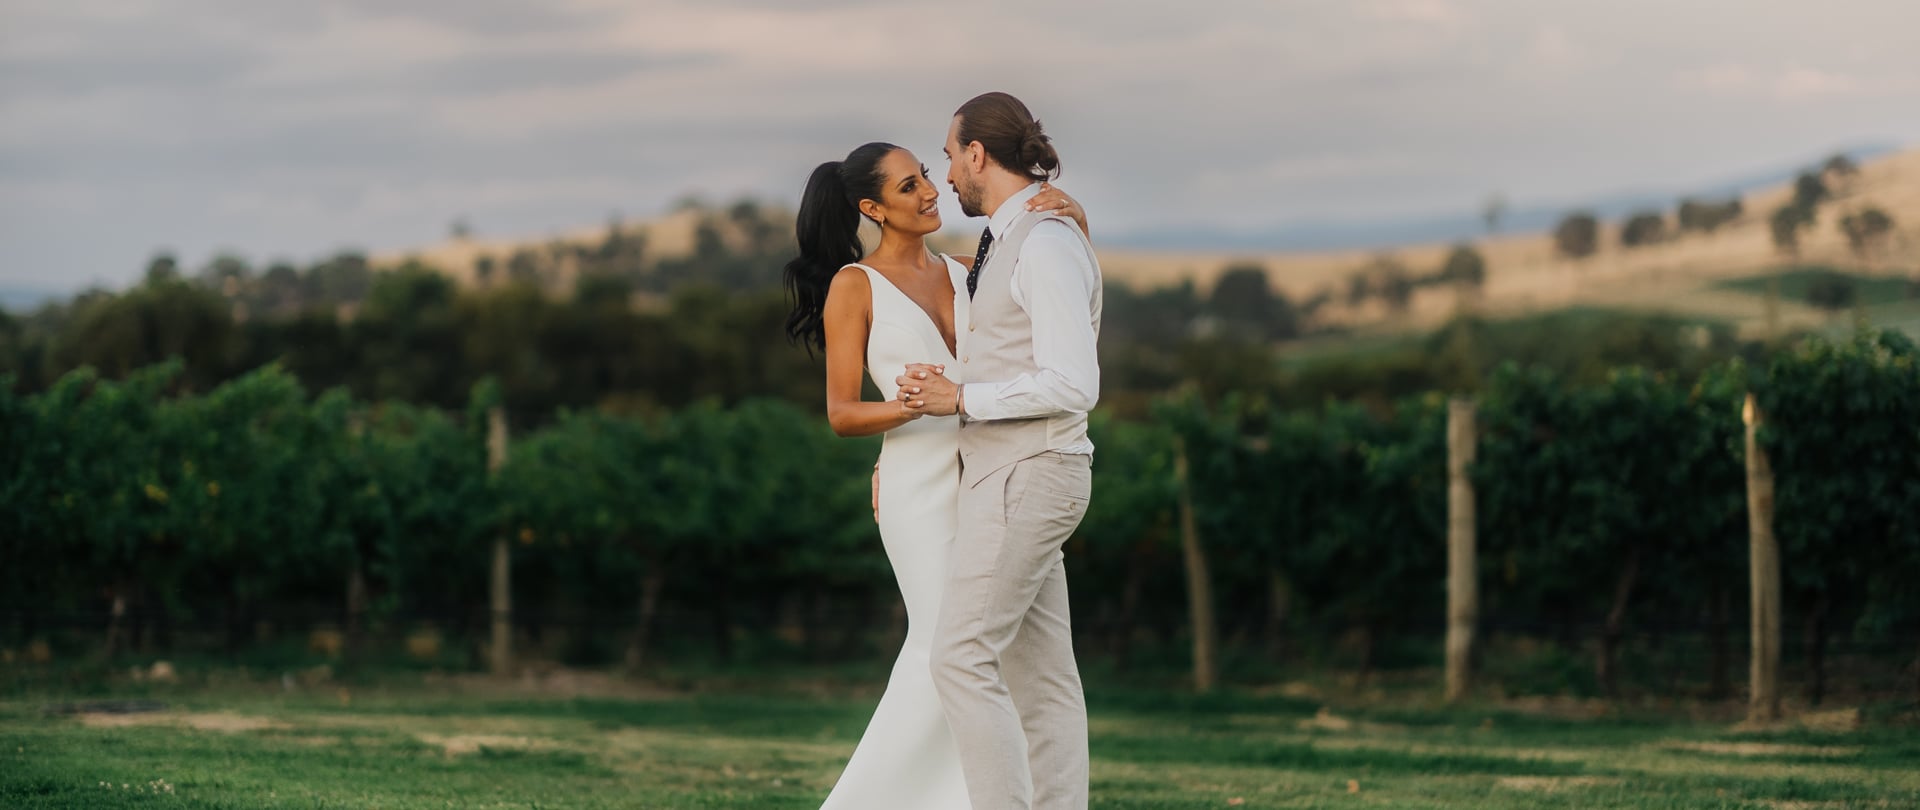 Elissa & Nathan Wedding Video Filmed at Yarra Valley, Victoria